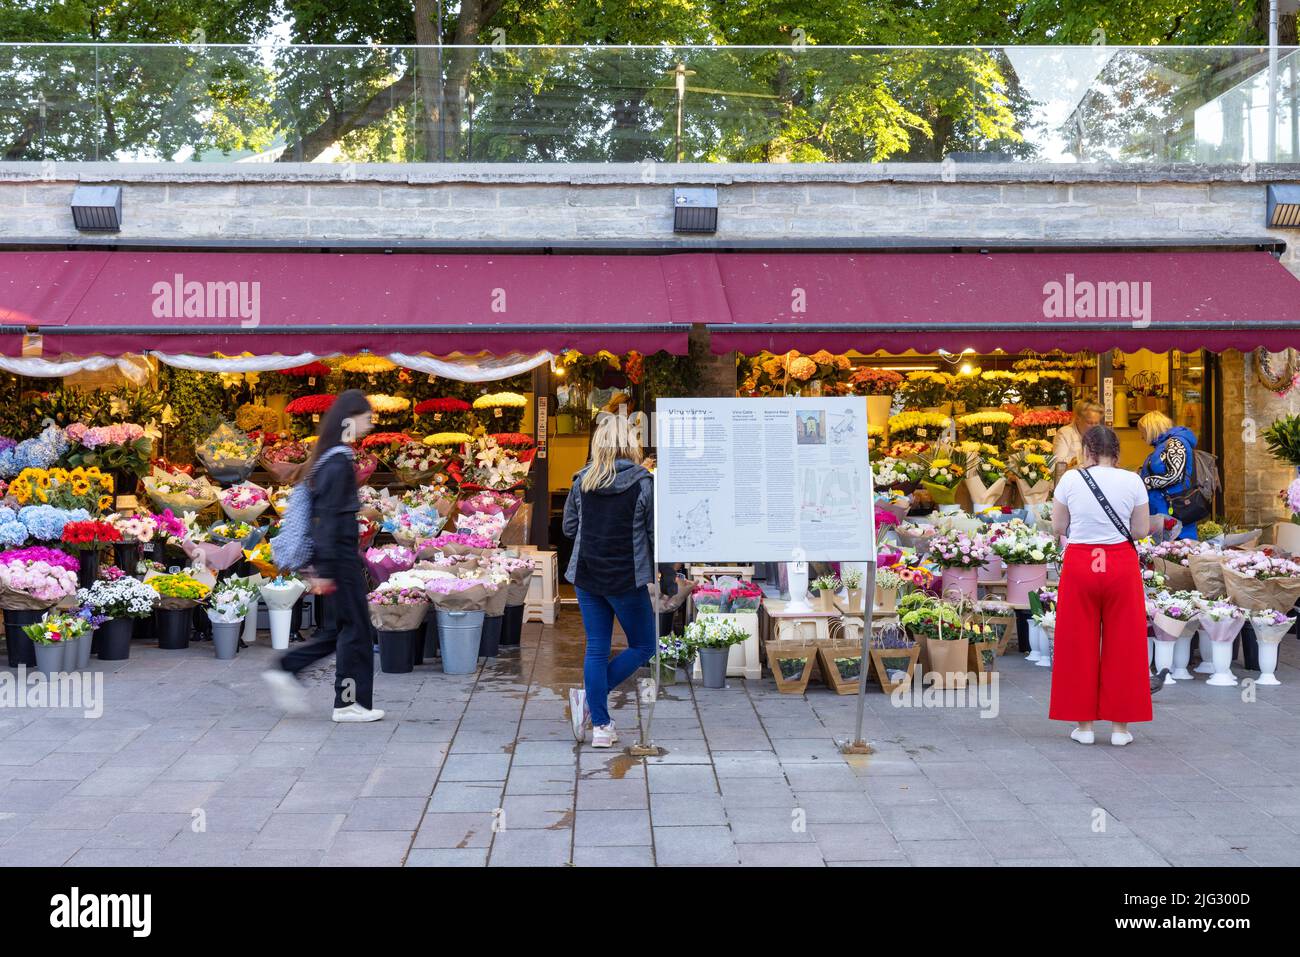 La gente compra flores en los puestos del mercado de flores de Tallinn, justo fuera de la puerta Viru al casco antiguo, el centro de Tallinn, Tallinn Estonia Foto de stock